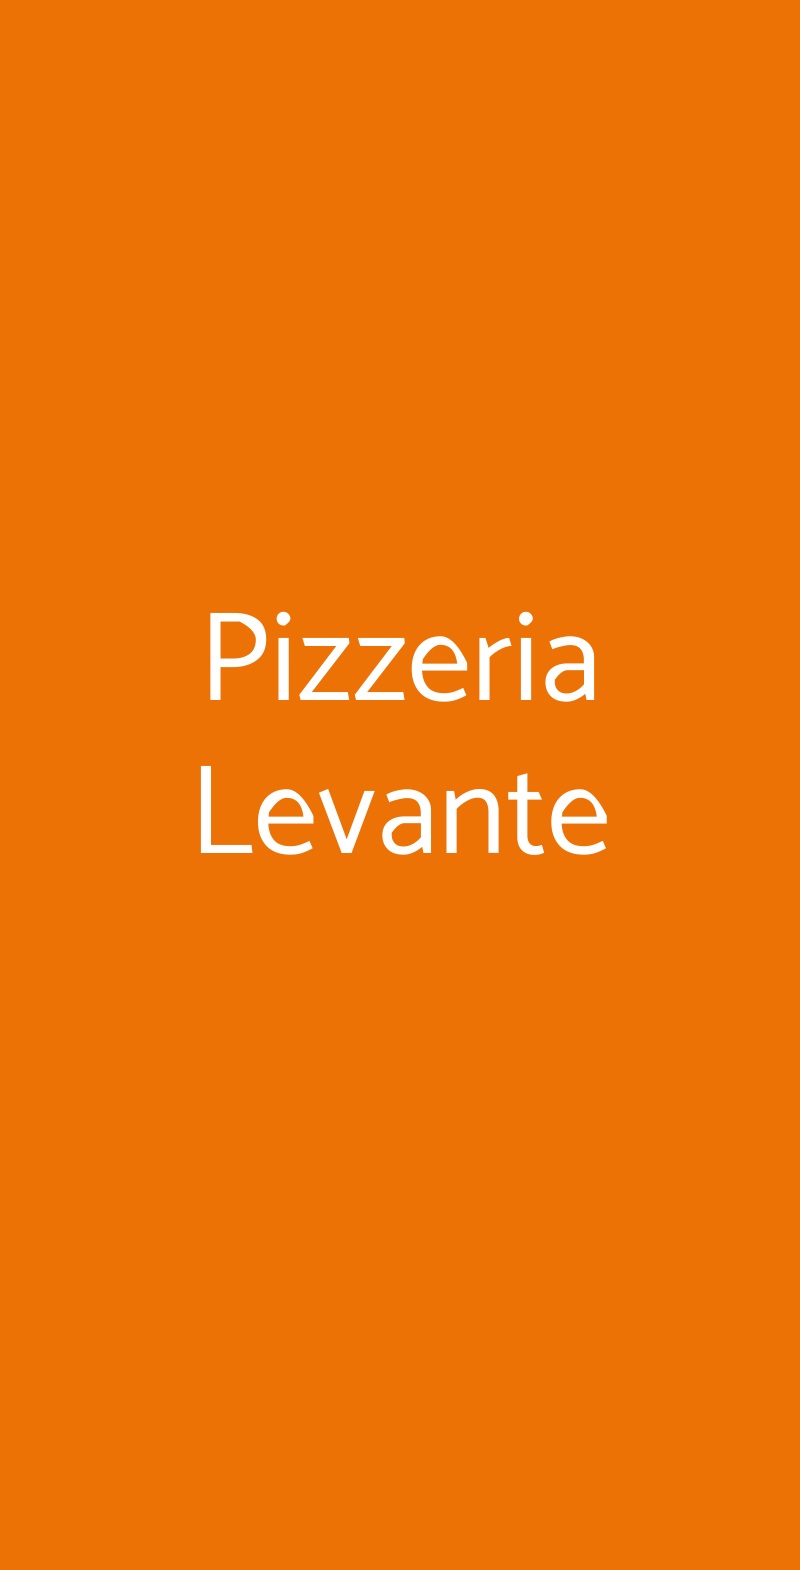 Pizzeria Levante Altamura menù 1 pagina